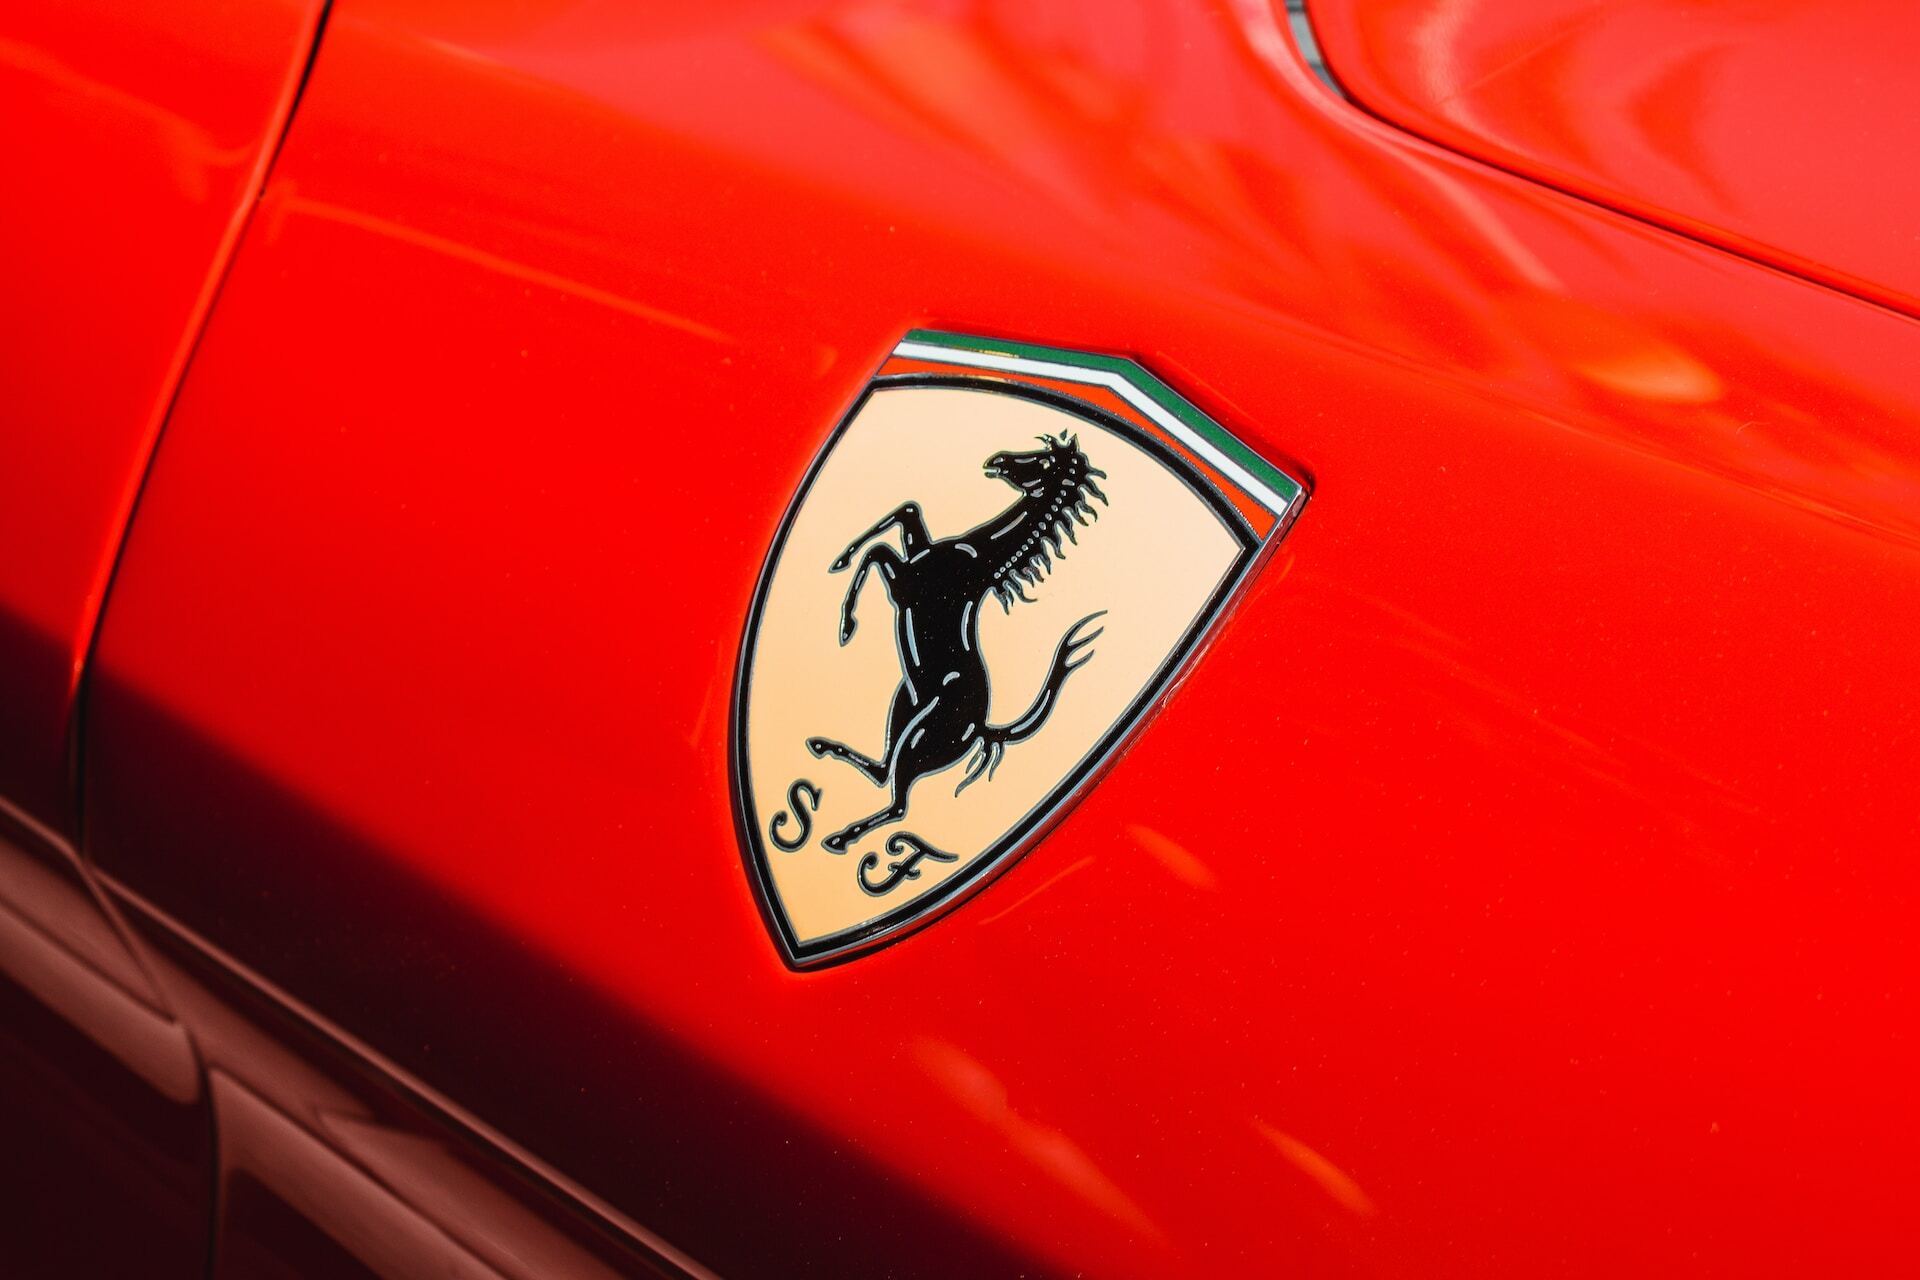 7202 Ferrari спробувала засудити покупця зробленої з купе Ford репліки 430 Scuderia